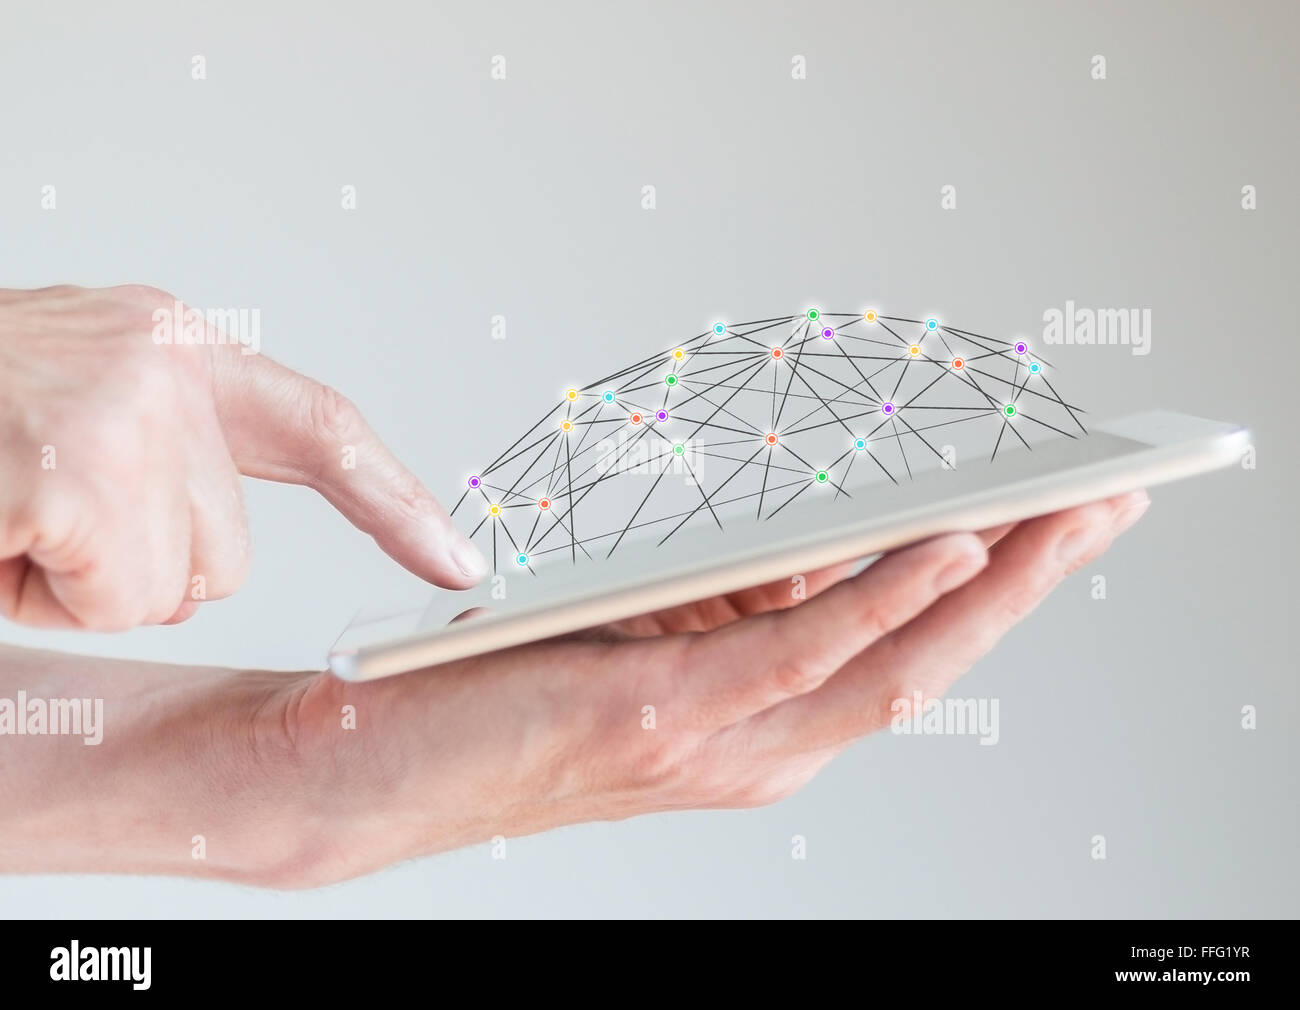 Image main d'hommes en tablettes mobiles avec l'écran du doigt. Concept de réseaux informatiques et réseaux sociaux accessibles Banque D'Images